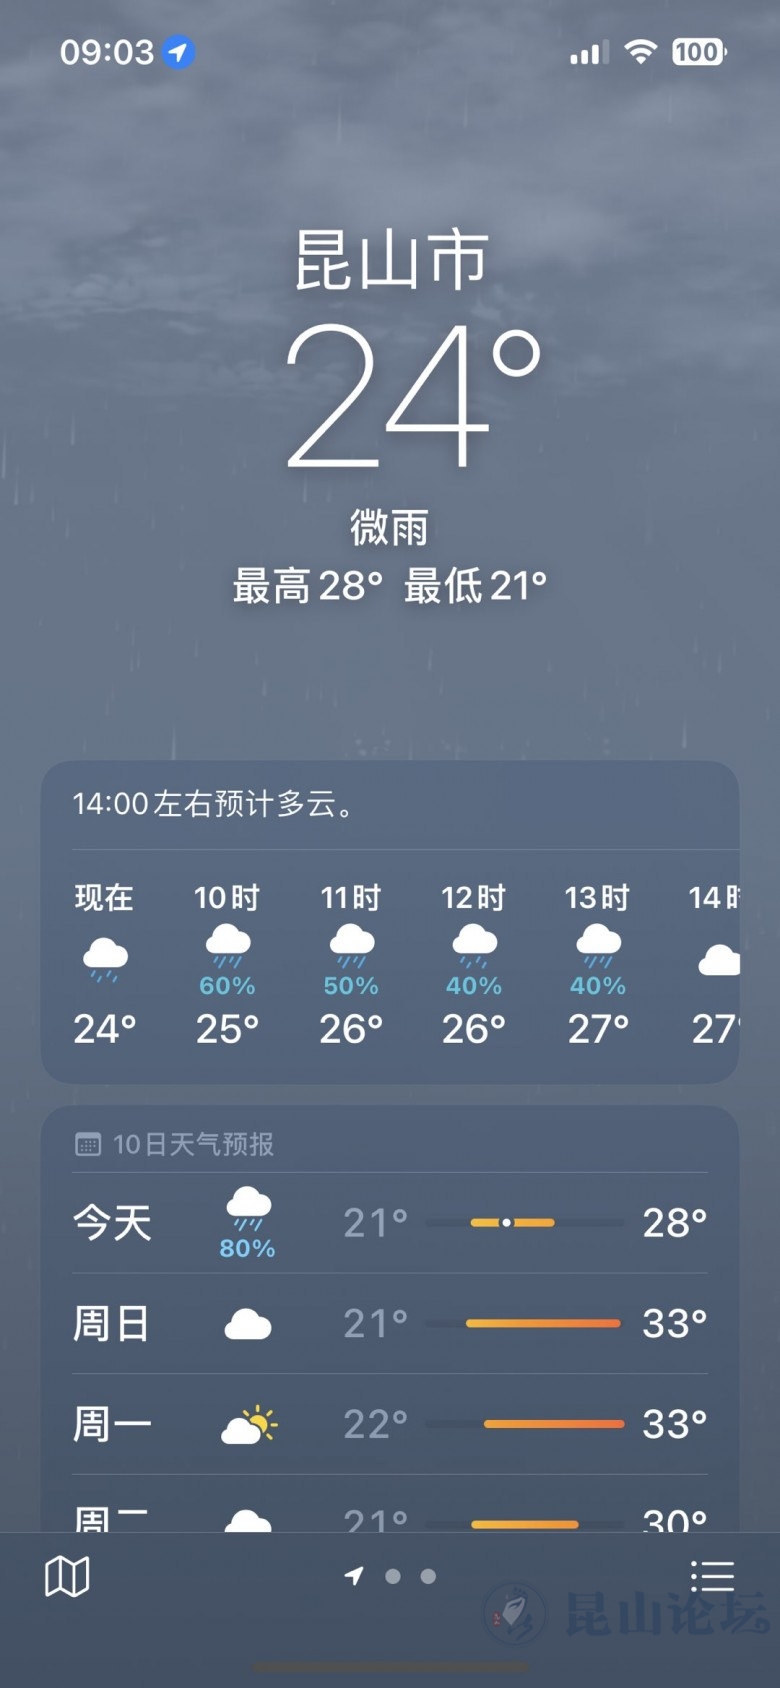 5月27日天气预报:昆山最高气温29度,全市阴有阵雨|玉山广场 - 昆山